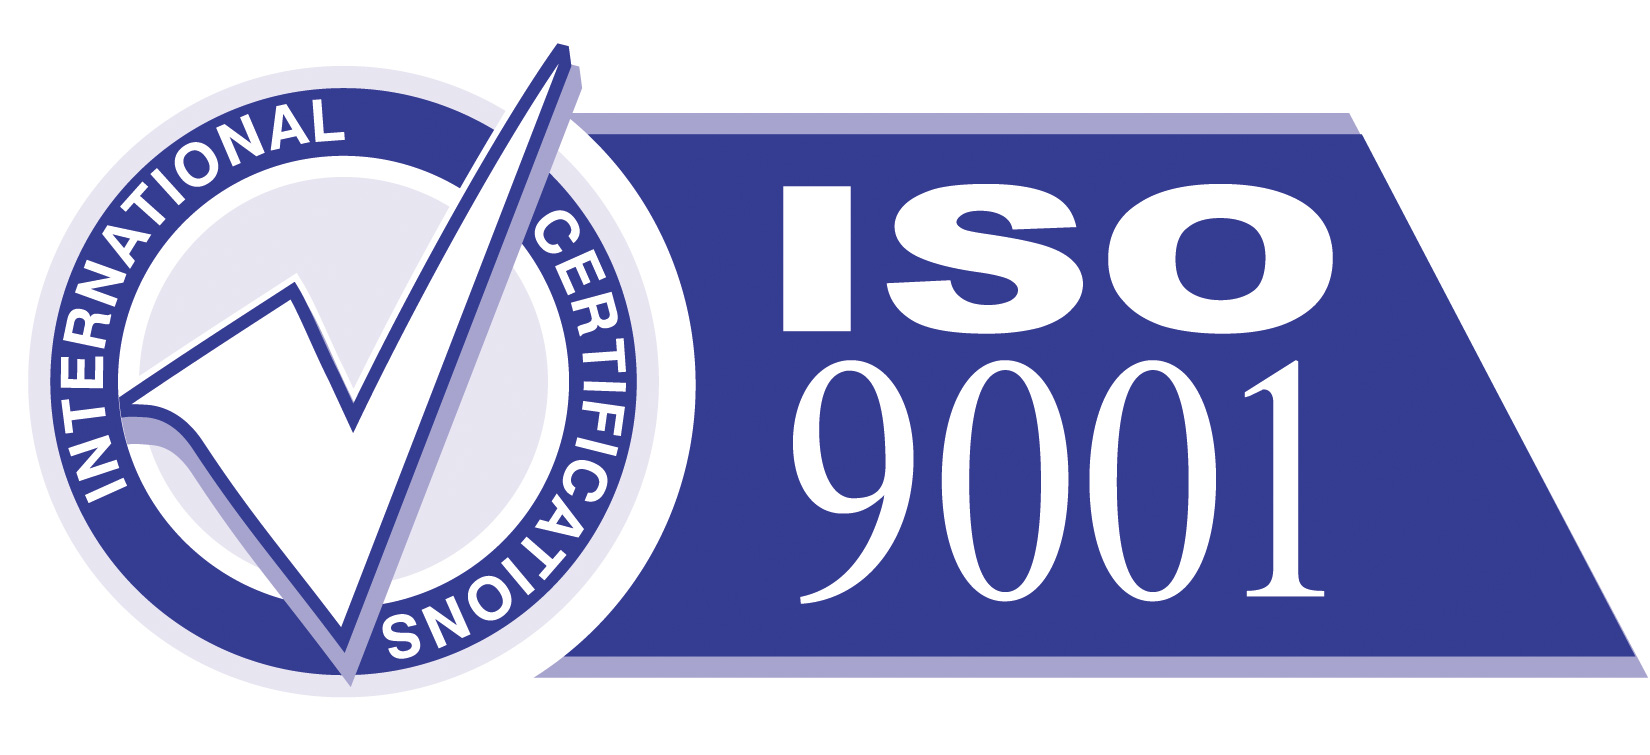 佛山ISO9001认证的简介及八项原则